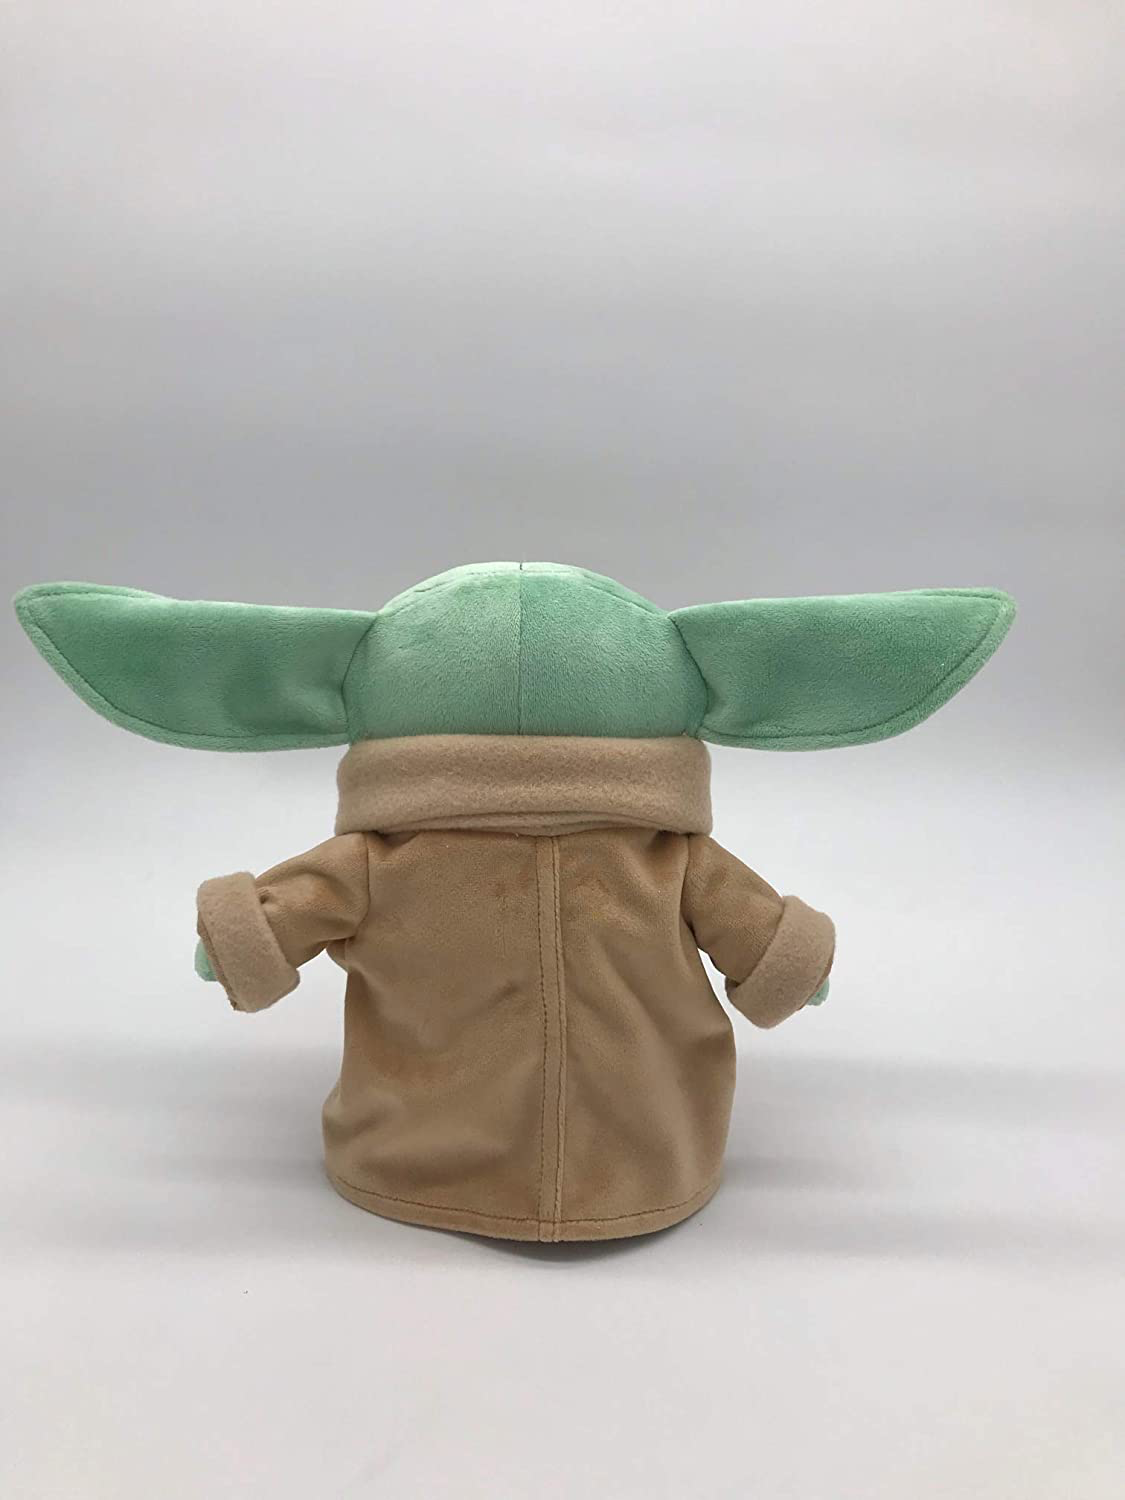 TM Baby Yoda (The Child) Plush Toy 3